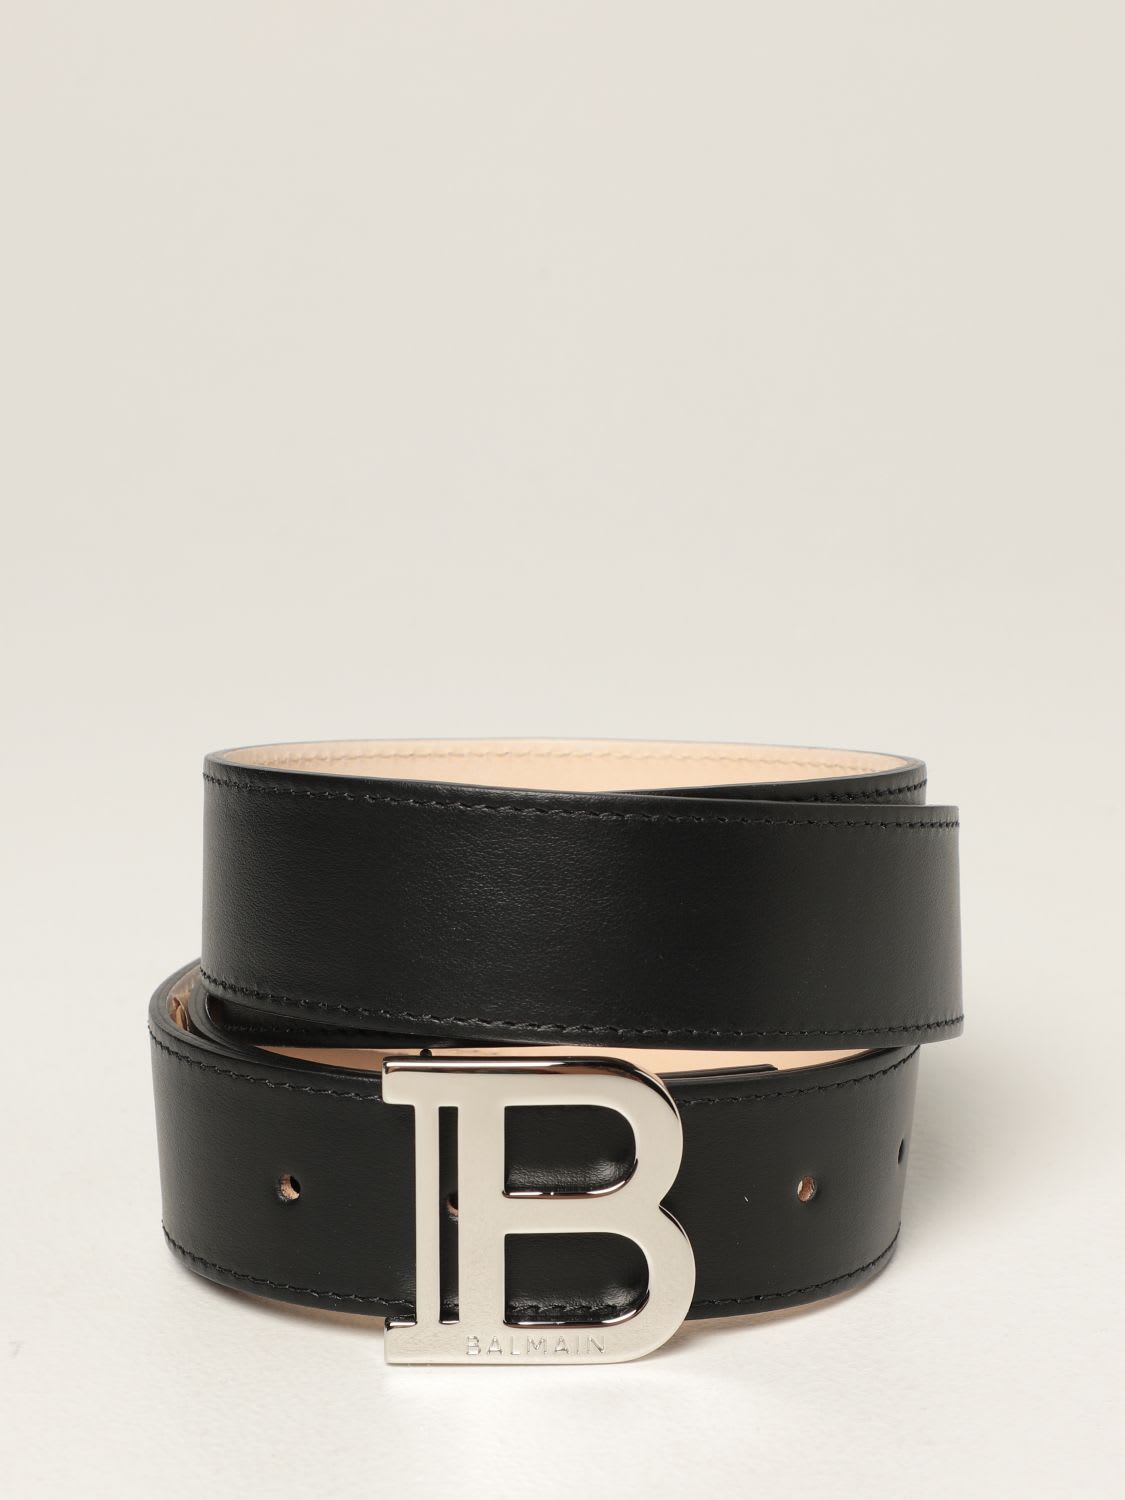 Balmain Belt Balmain Leather Belt